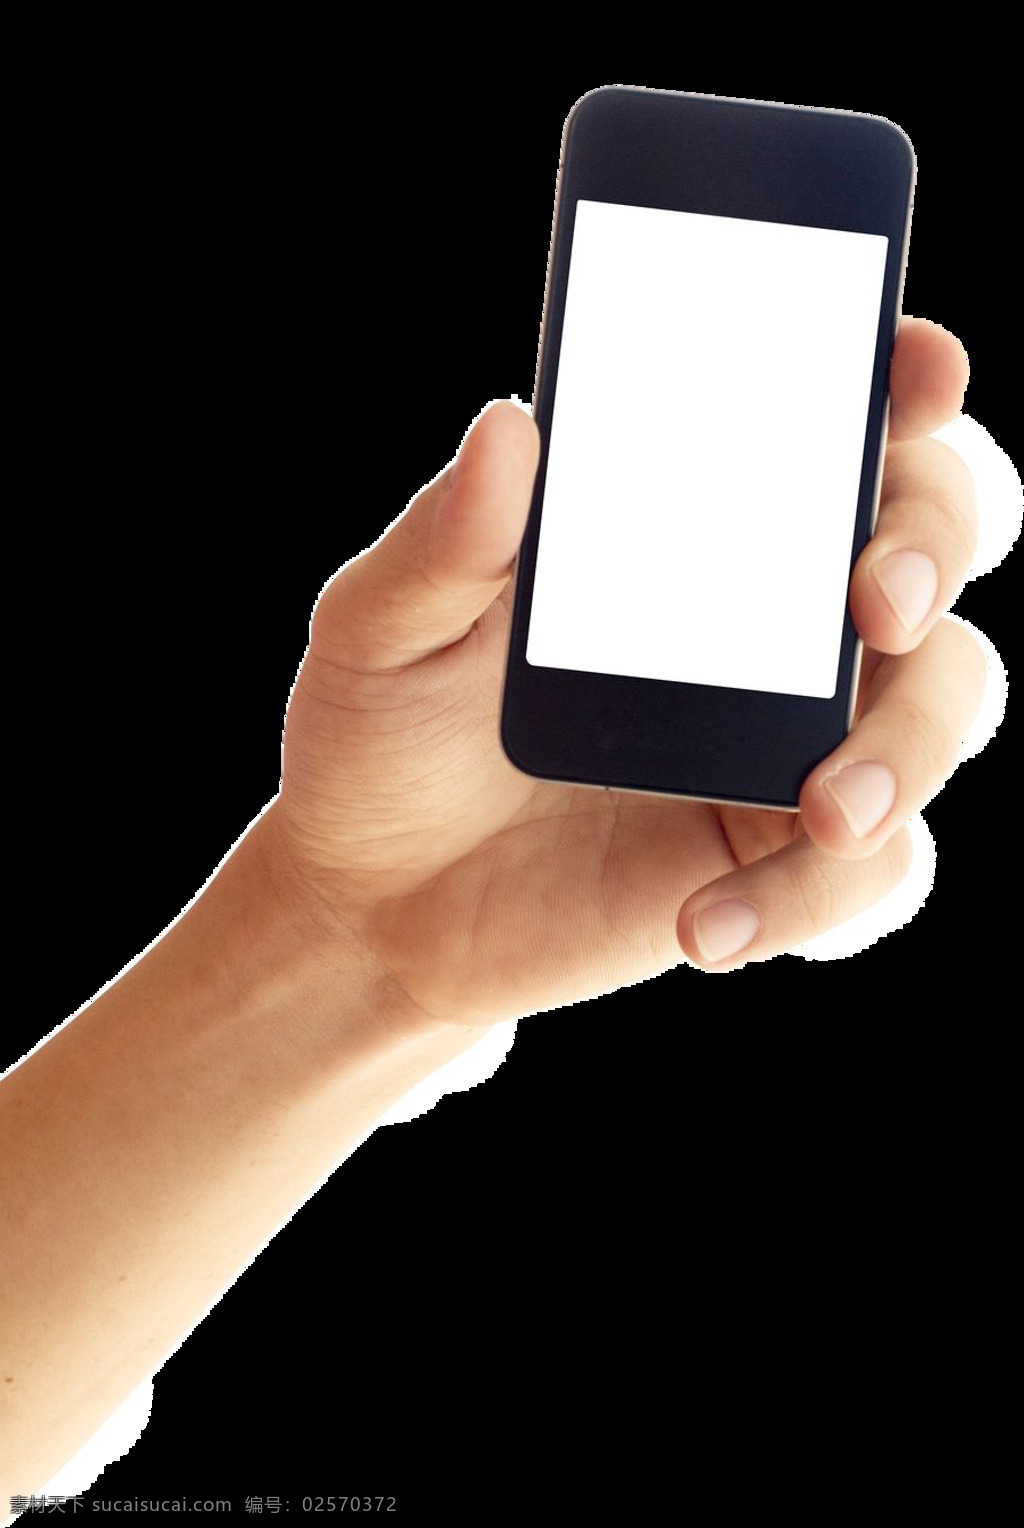 智能 手机 模板 免 抠 透明 图 层 手机图片素材 苹果手机图片 4g智能手机 透明智能手机 智能手机样机 智能手机贴图 安卓智能手机 苹果智能手机 安卓手机 苹果手机